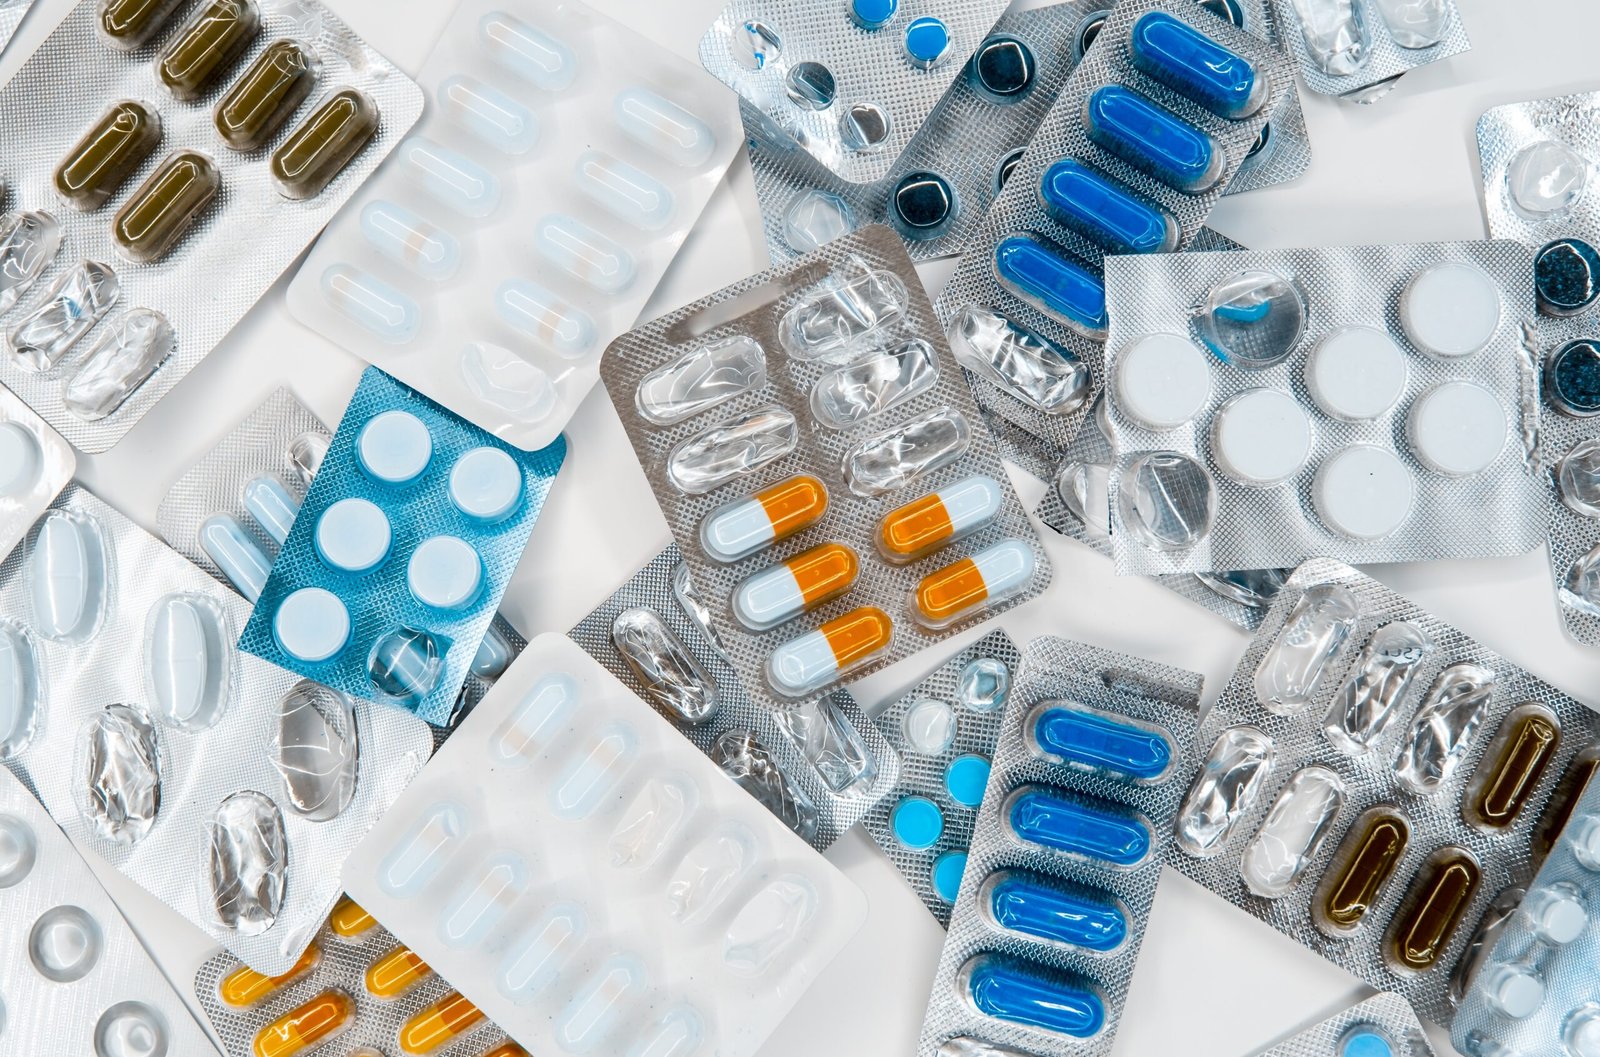 Abrir Uma Farmácia É um Bom Negócio? Saiba Como Anda o Mercado Farmacêutico em 2021!